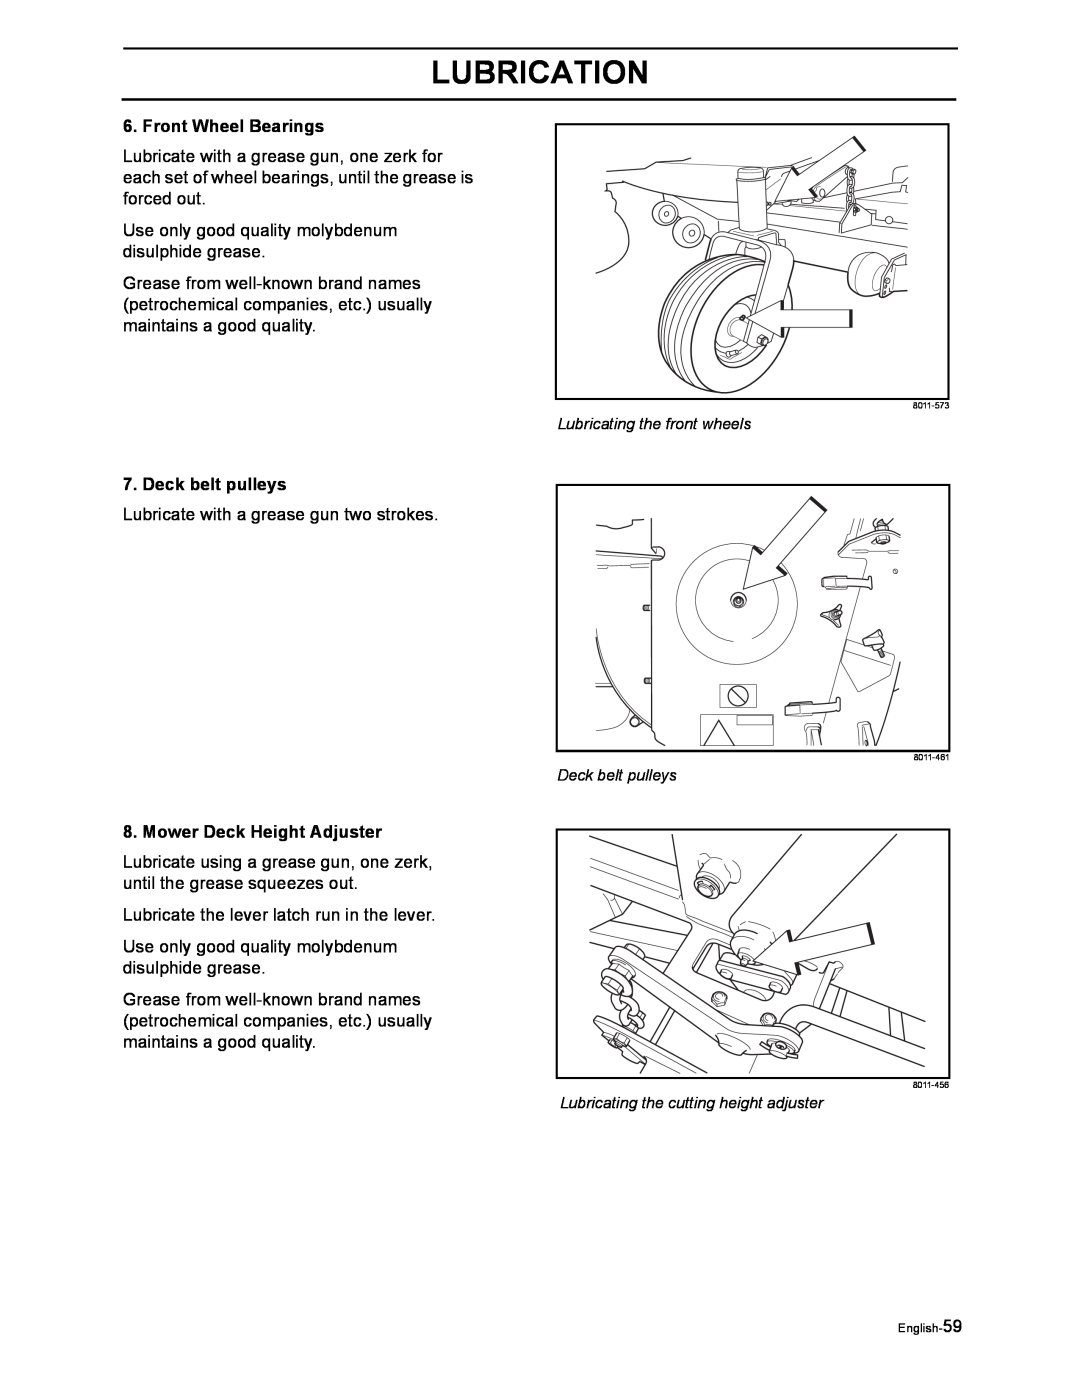 Husqvarna iZ4817SKAA/968999356 manual Front Wheel Bearings, Deck belt pulleys, Mower Deck Height Adjuster, Lubrication 